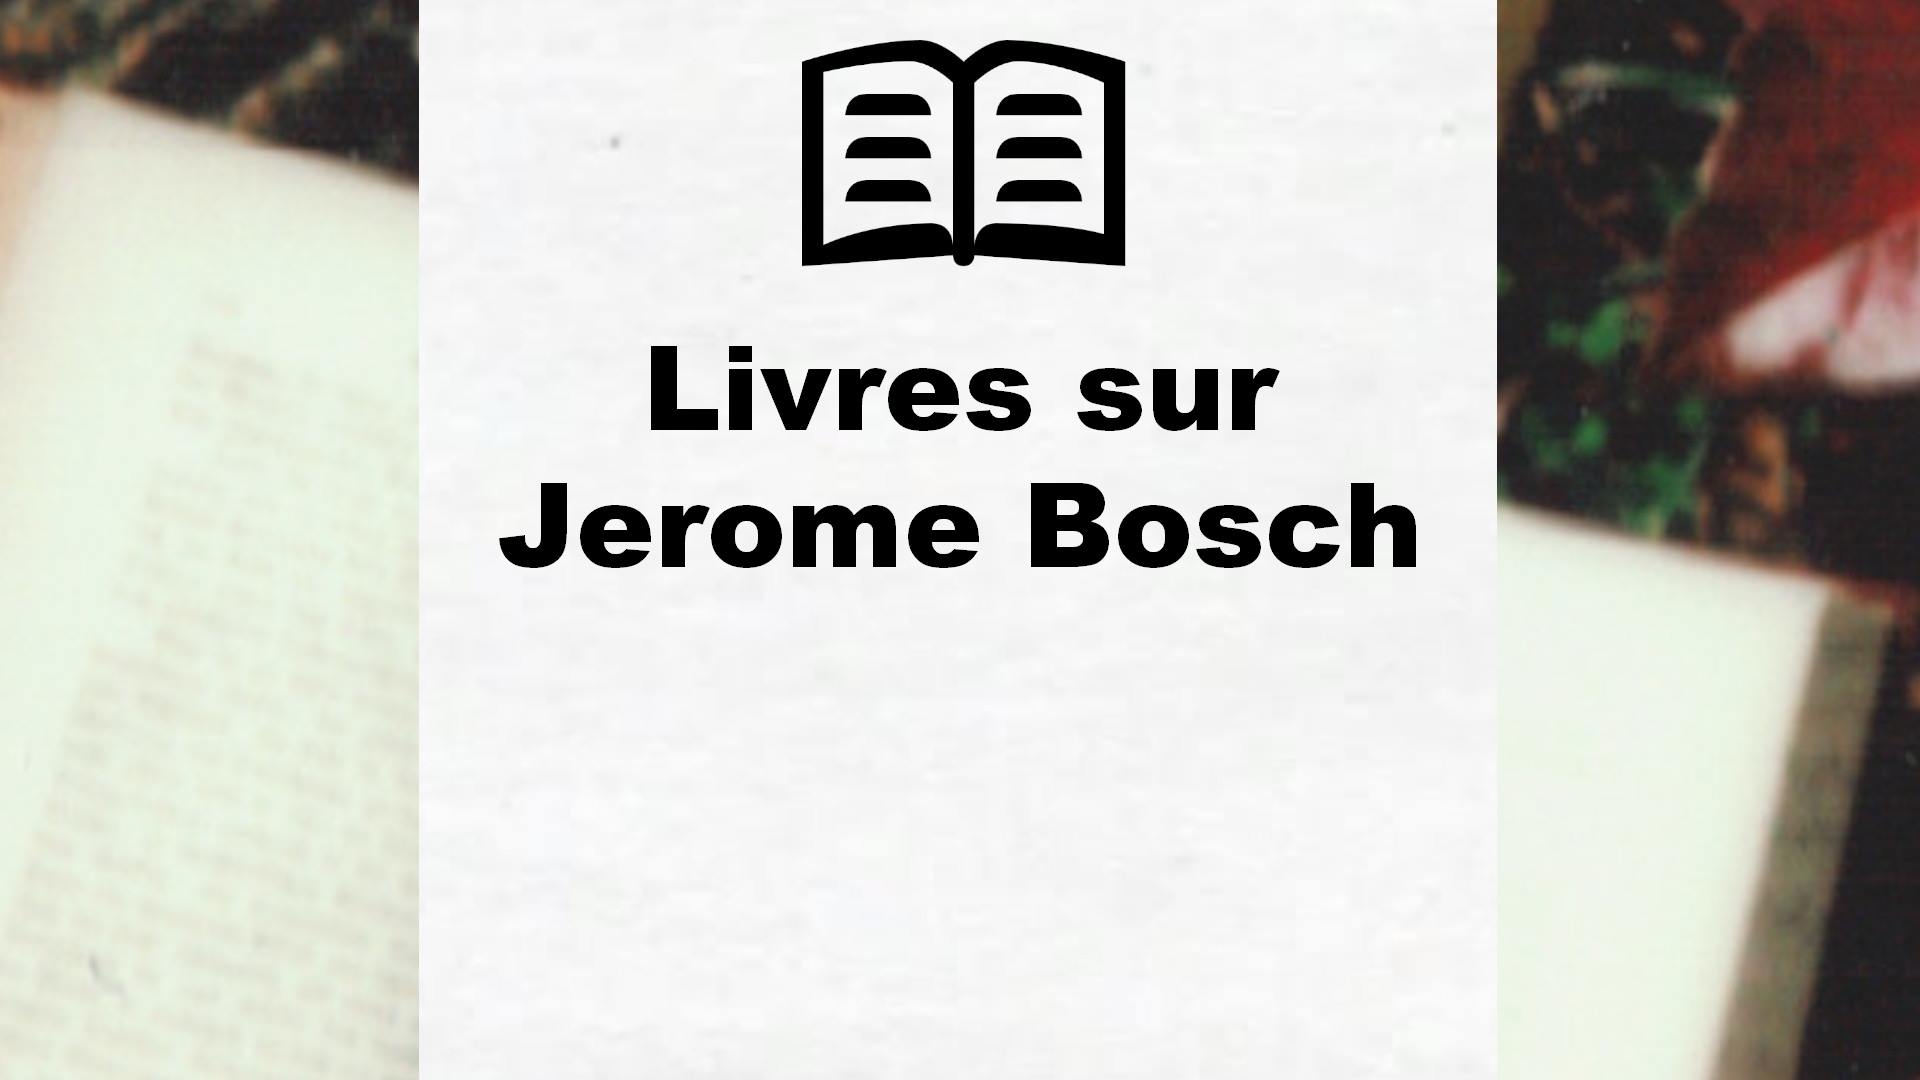 Livres sur Jerome Bosch